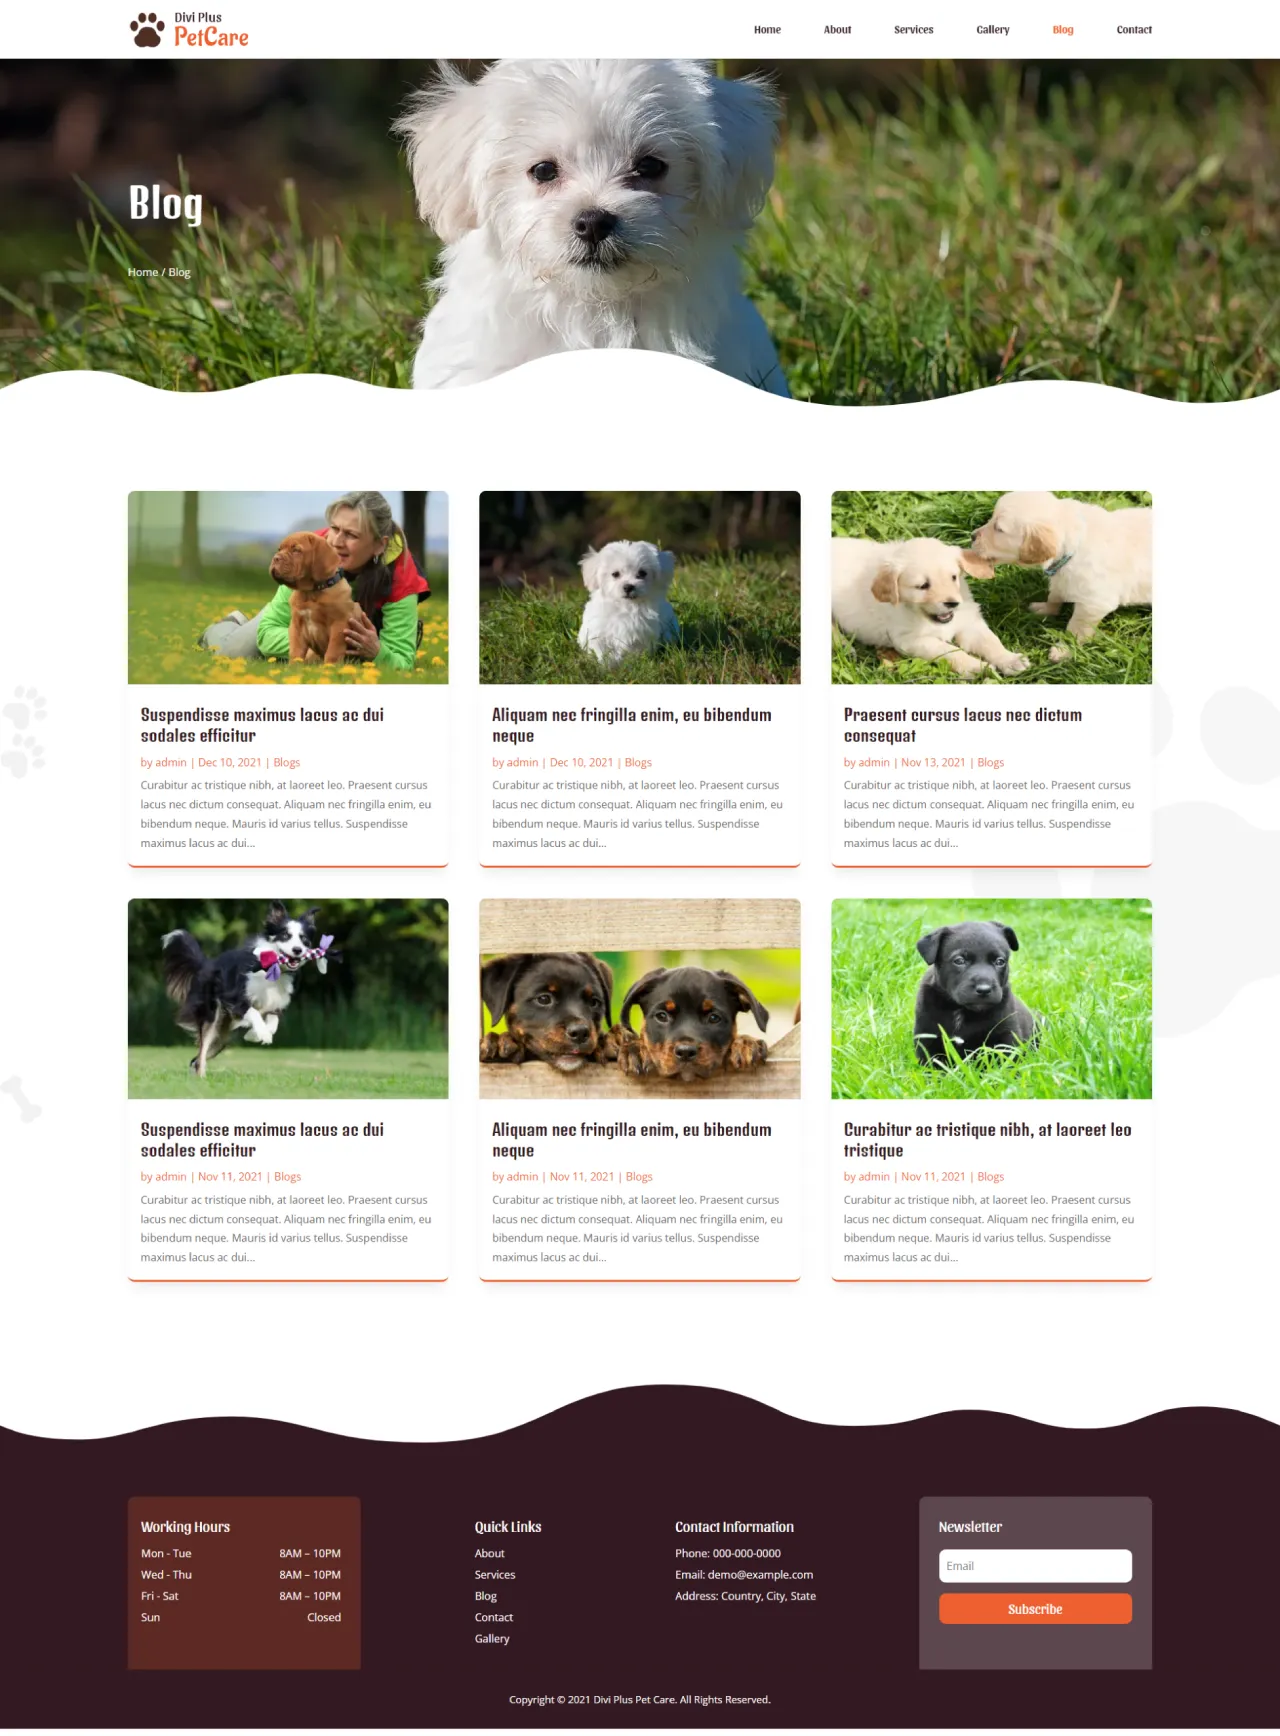 Divi Plus Pet Care Blog